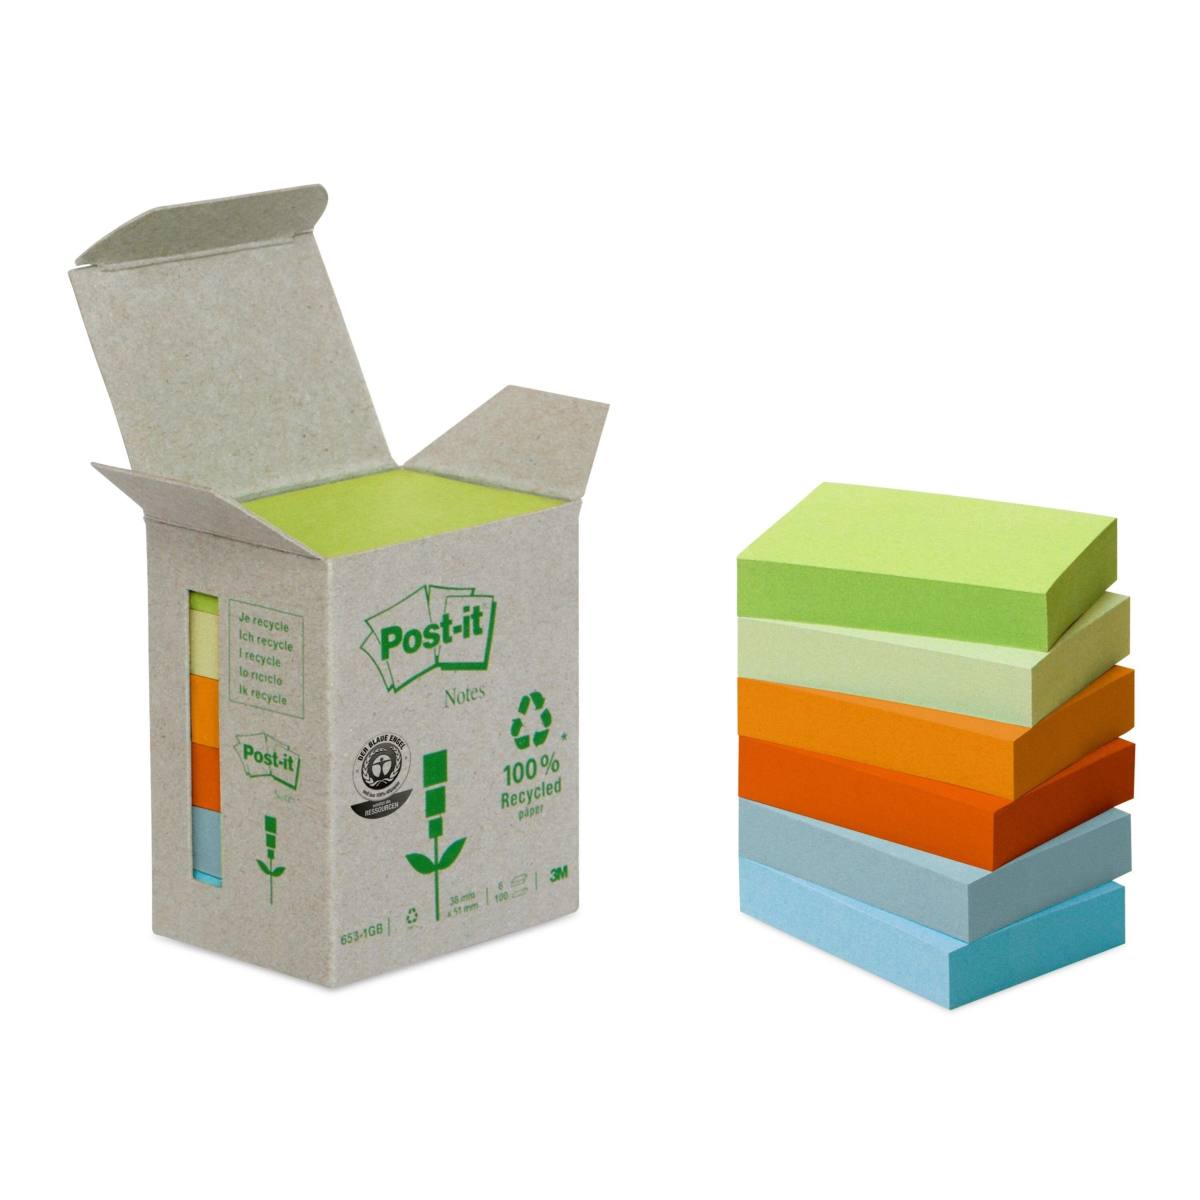 3M Post-it Recycling Notes 653-1GB, 51 mm x 38 mm, vari colori, 6 blocchetti da 100 fogli ciascuno